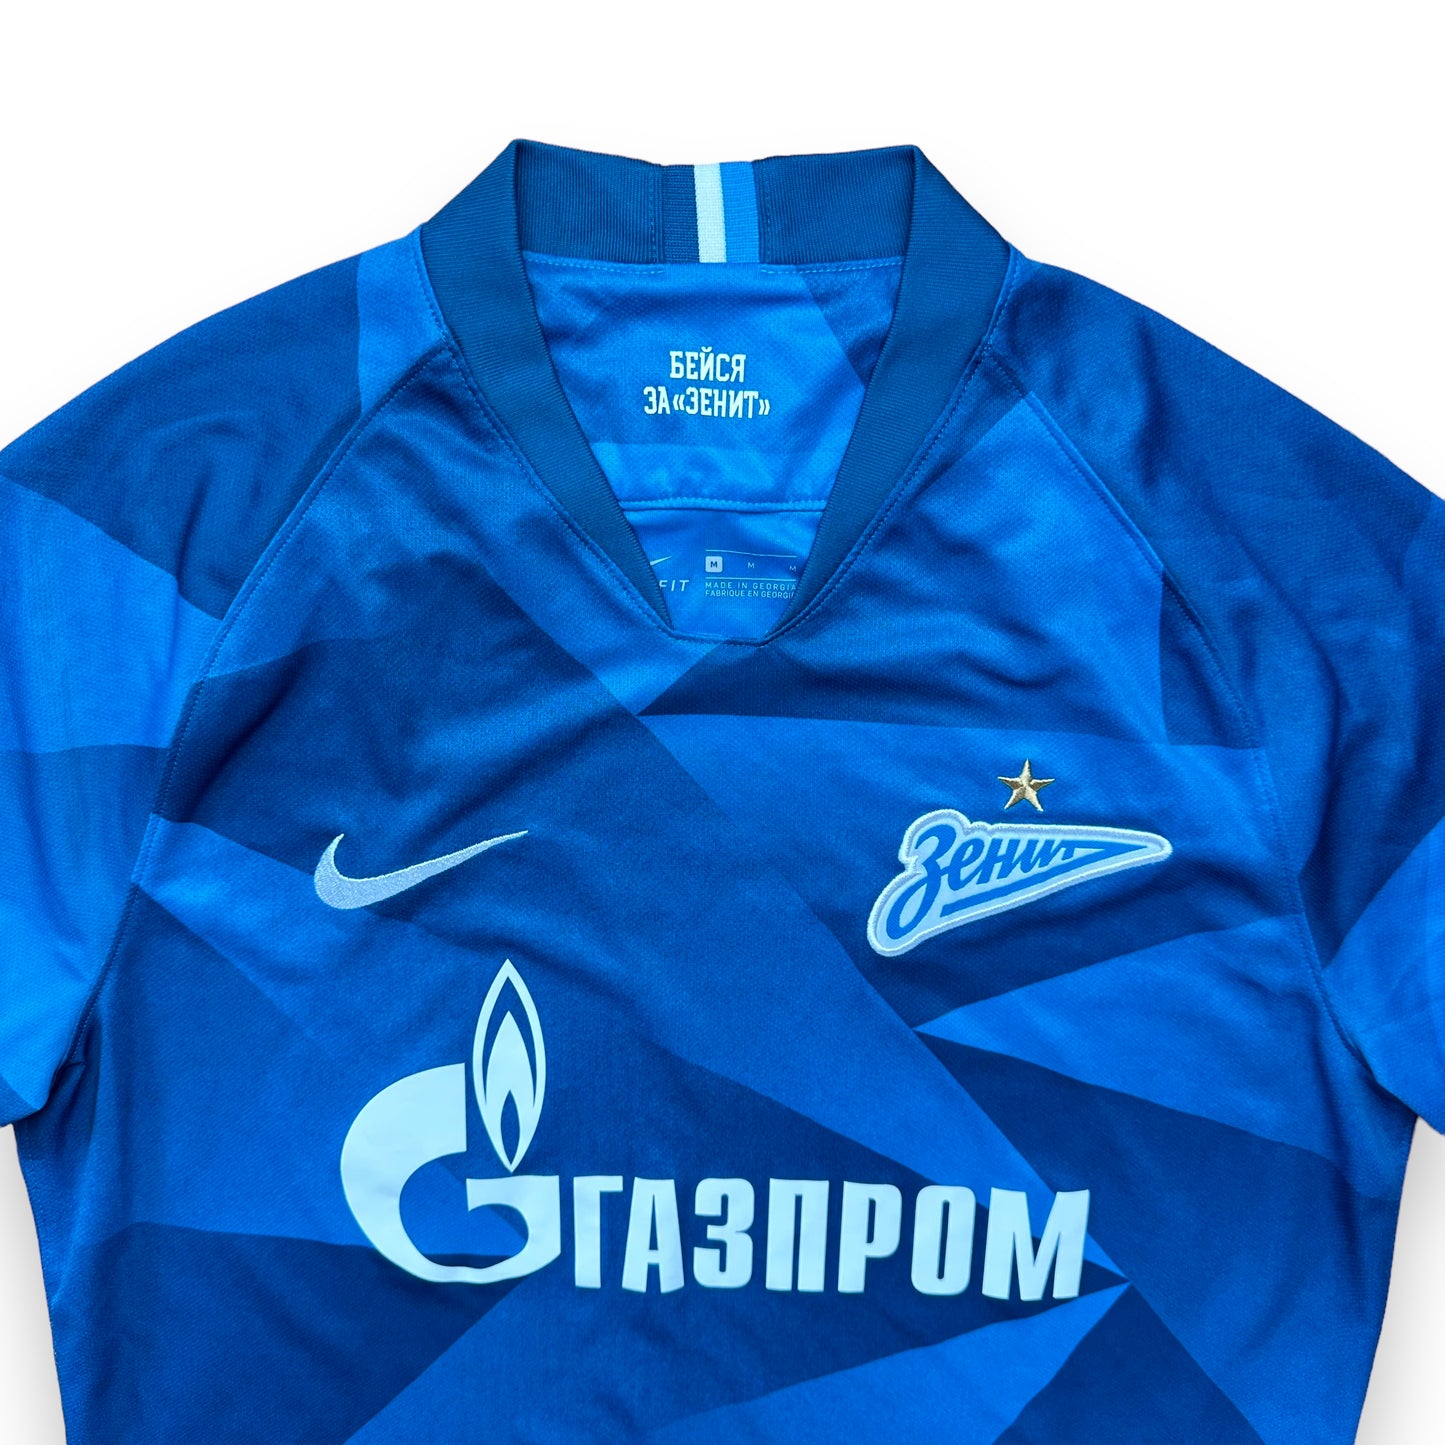 Zenit St. Petersburg 2019-20 Home Shirt (M)